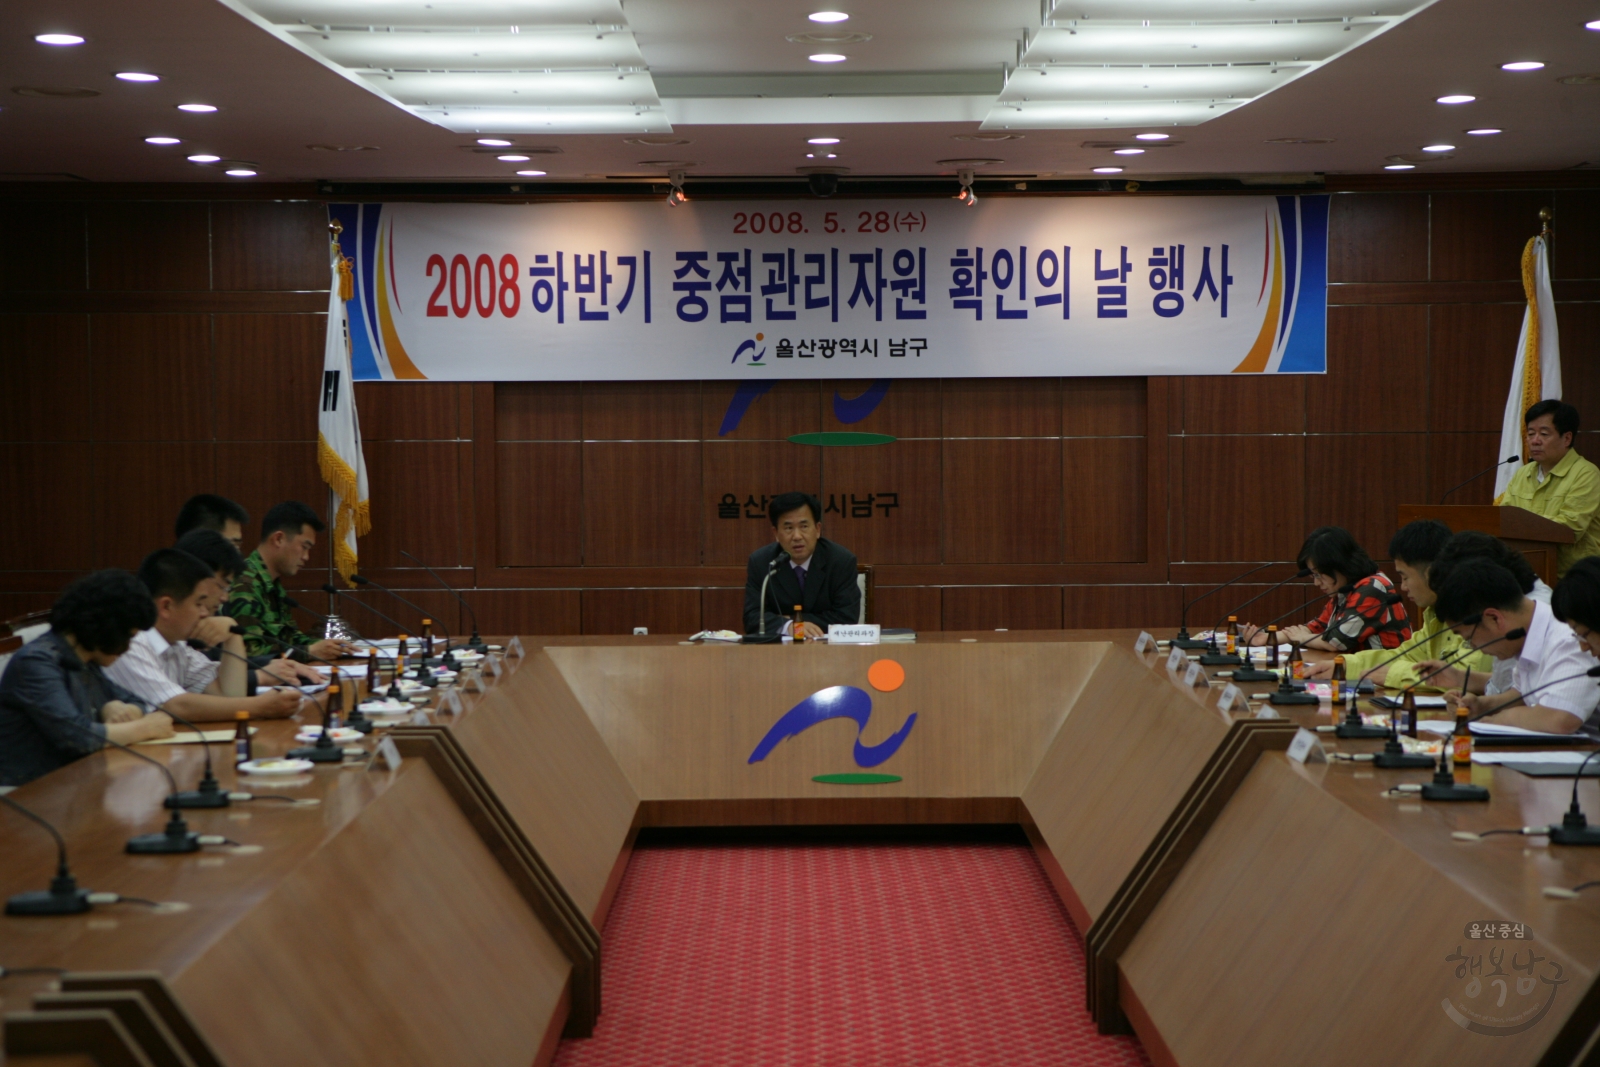 2008 하반기 중점관리자원 확인의날 행사 의 사진